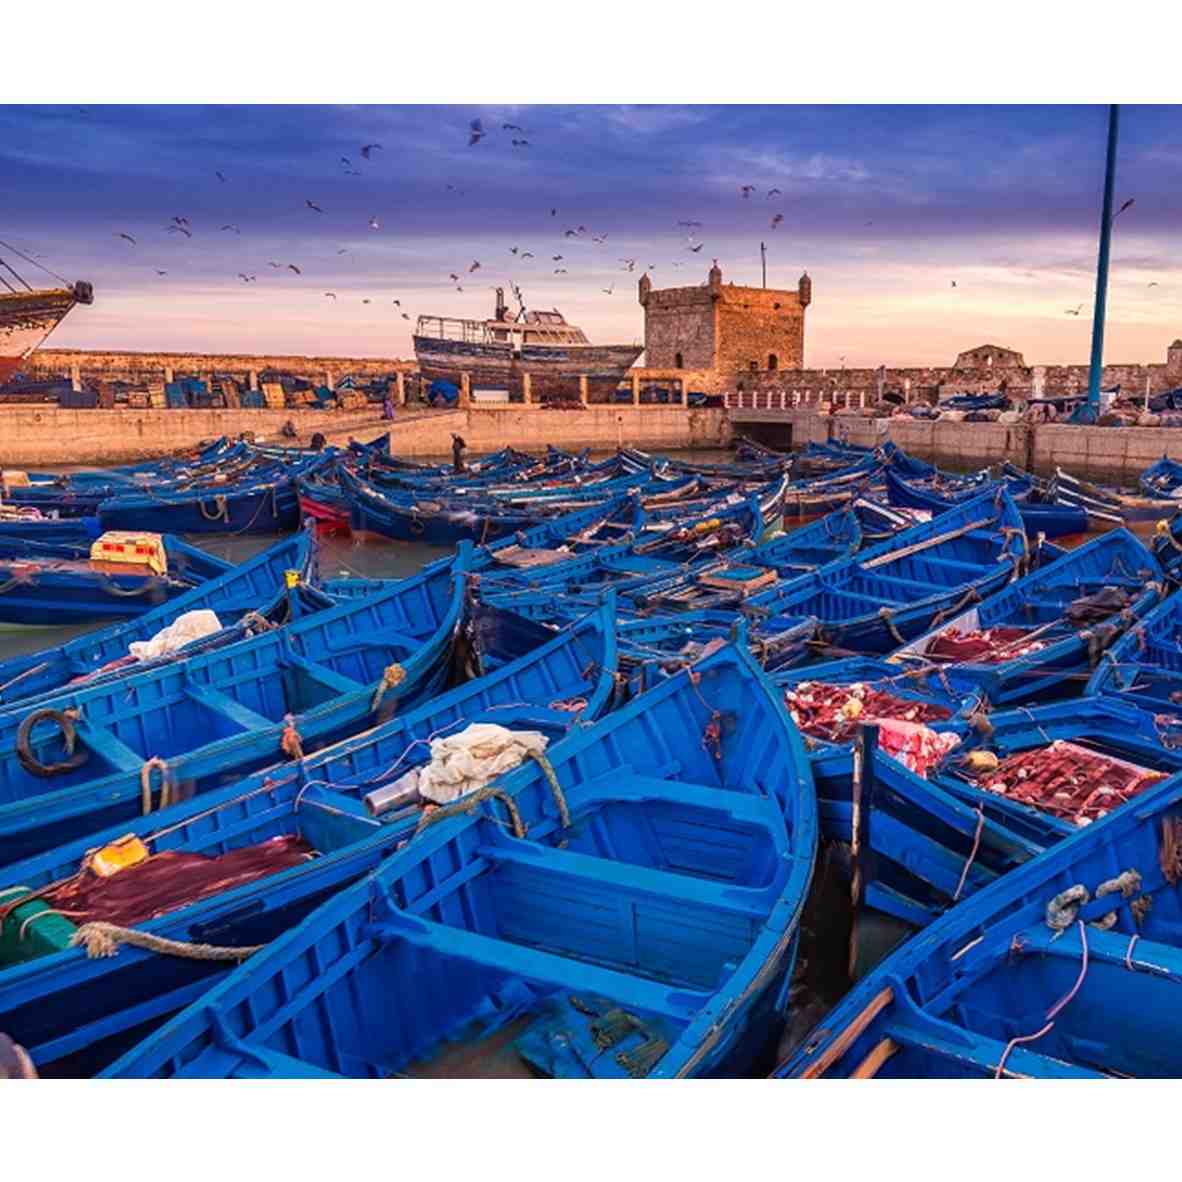 4 Spot Traveling di Maroko, Negara 1000 Benteng